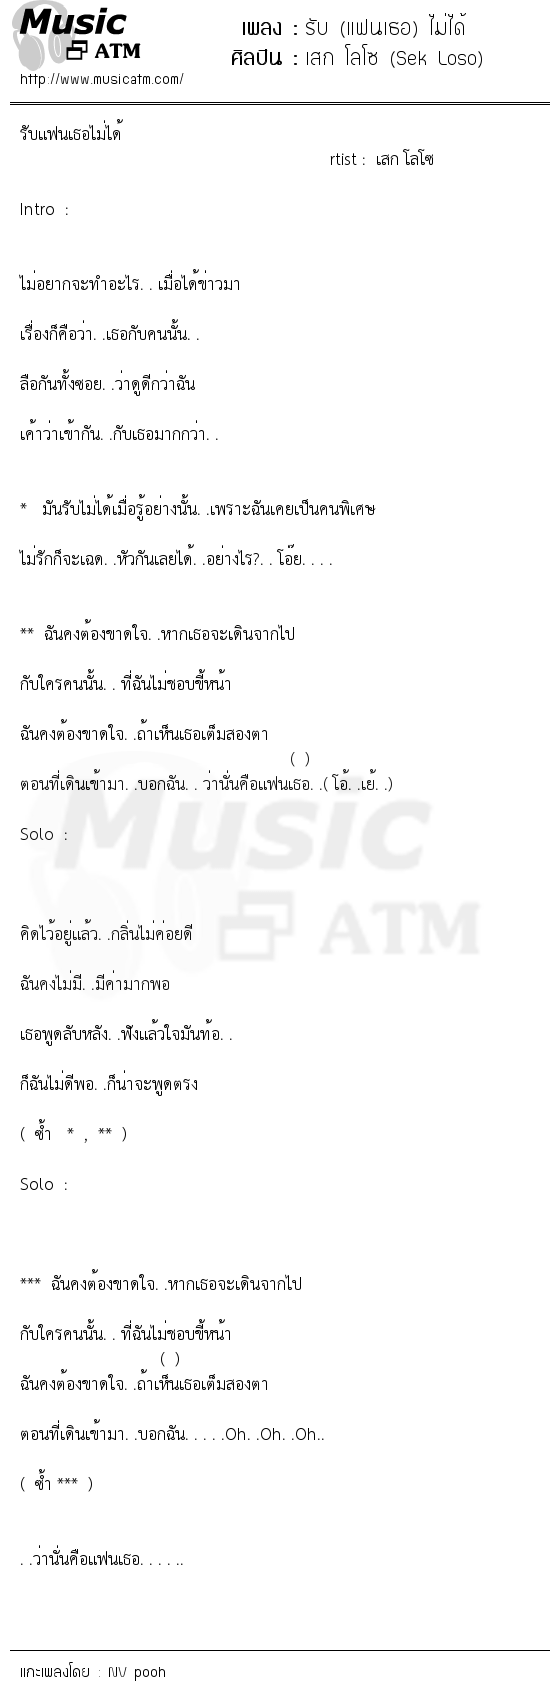 เนื้อเพลง รับ (แฟนเธอ) ไม่ได้ - เสก โลโซ (Sek Loso) | เพลงไทย